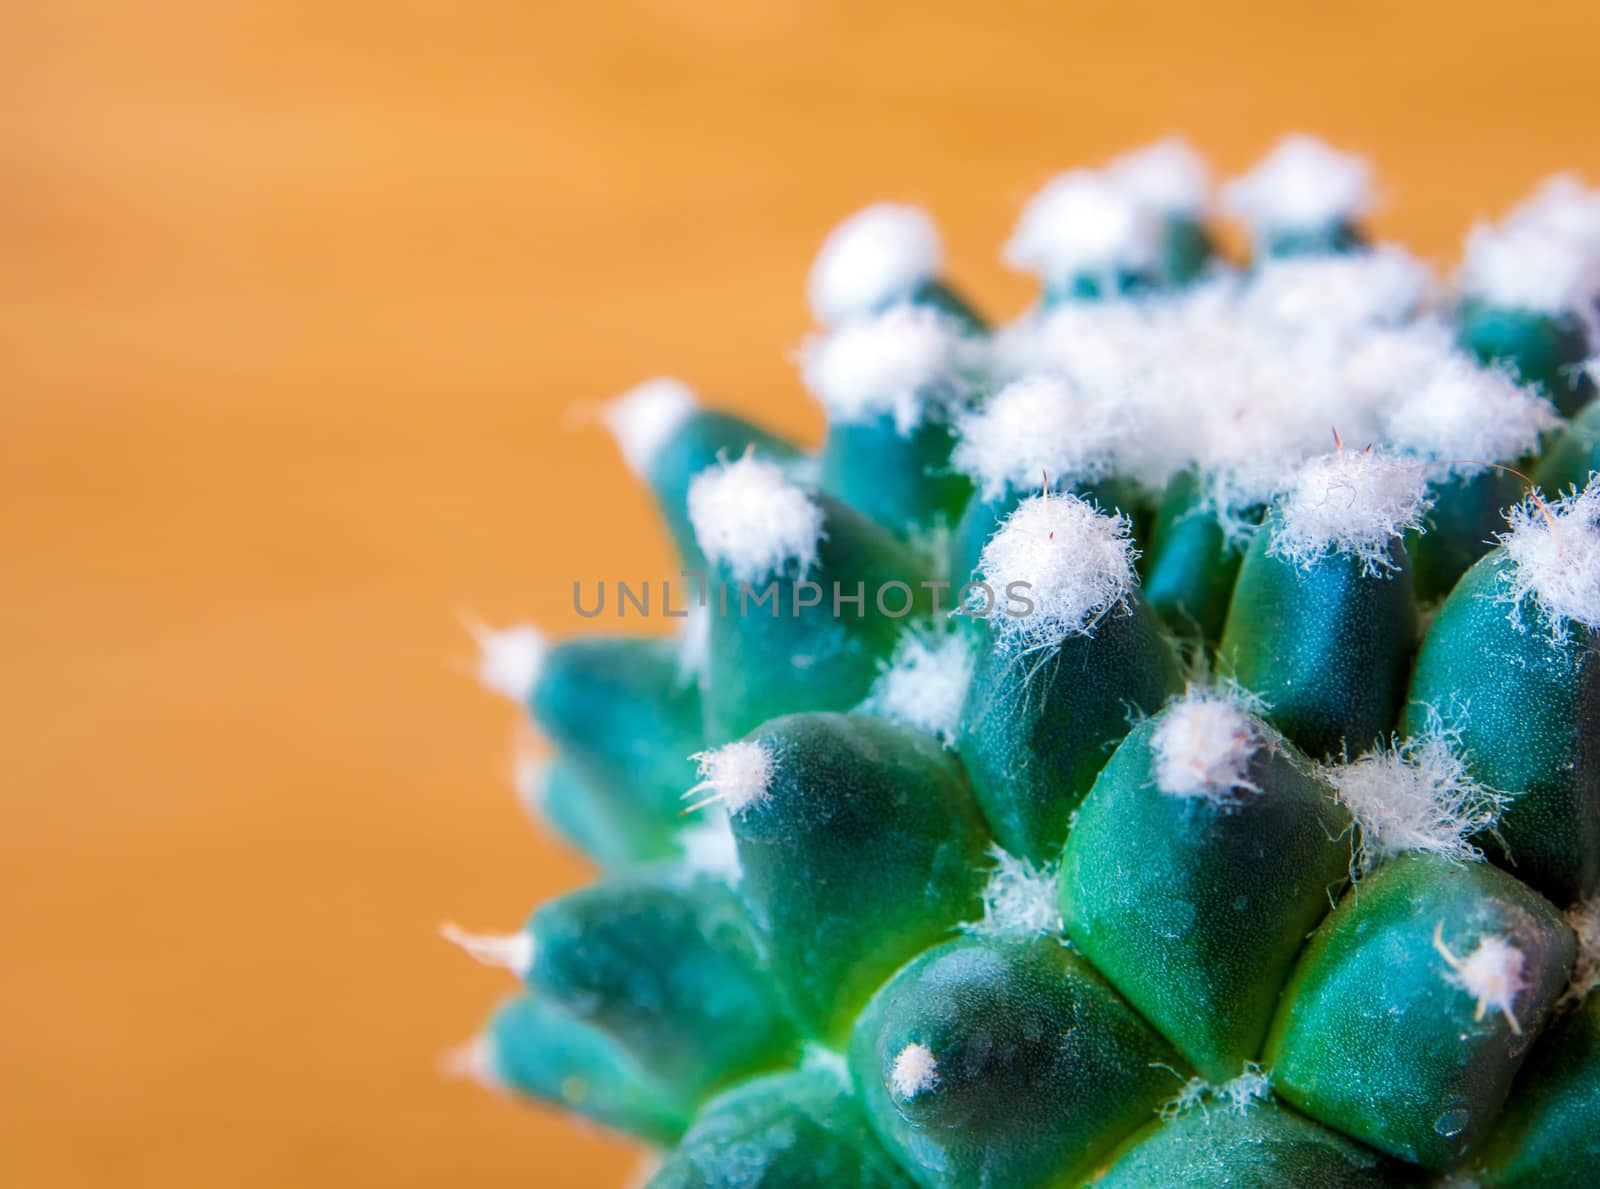 Cactus species Mammillaria gracilis cv. oruga blanca by Satakorn